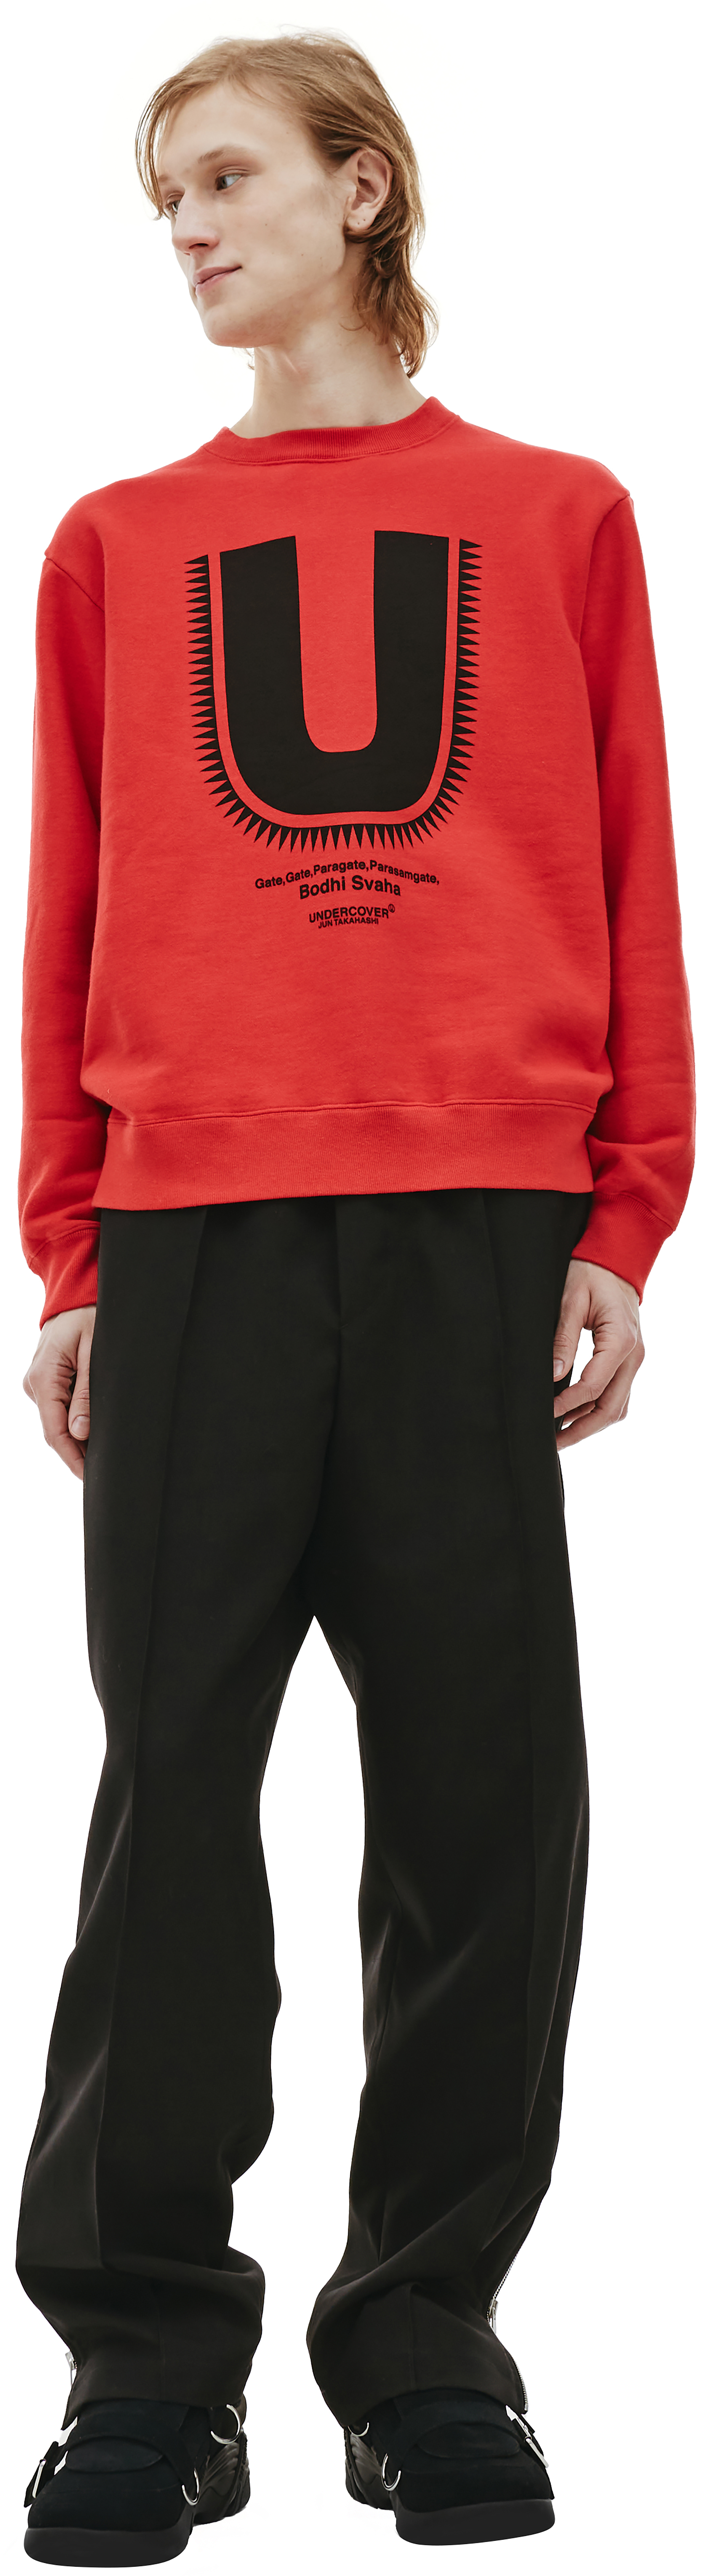 Buy Undercover men red 'u' sweatshirt for $150 online on SV77